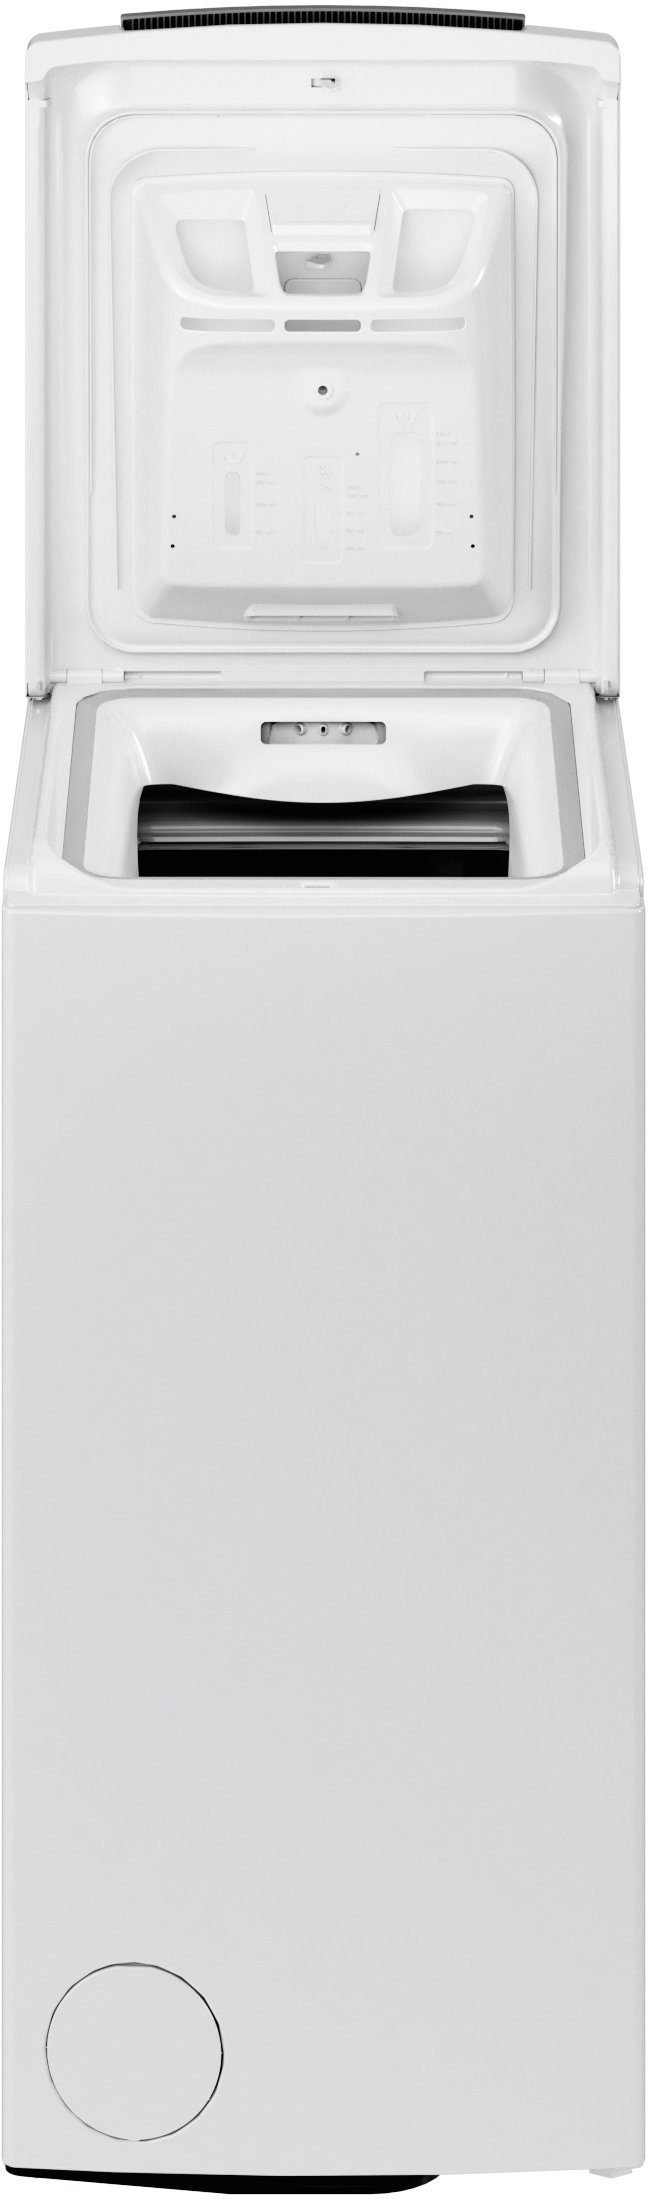 BAUKNECHT Waschmaschine Toplader WAT U/min C, kg, 6 1200 6313